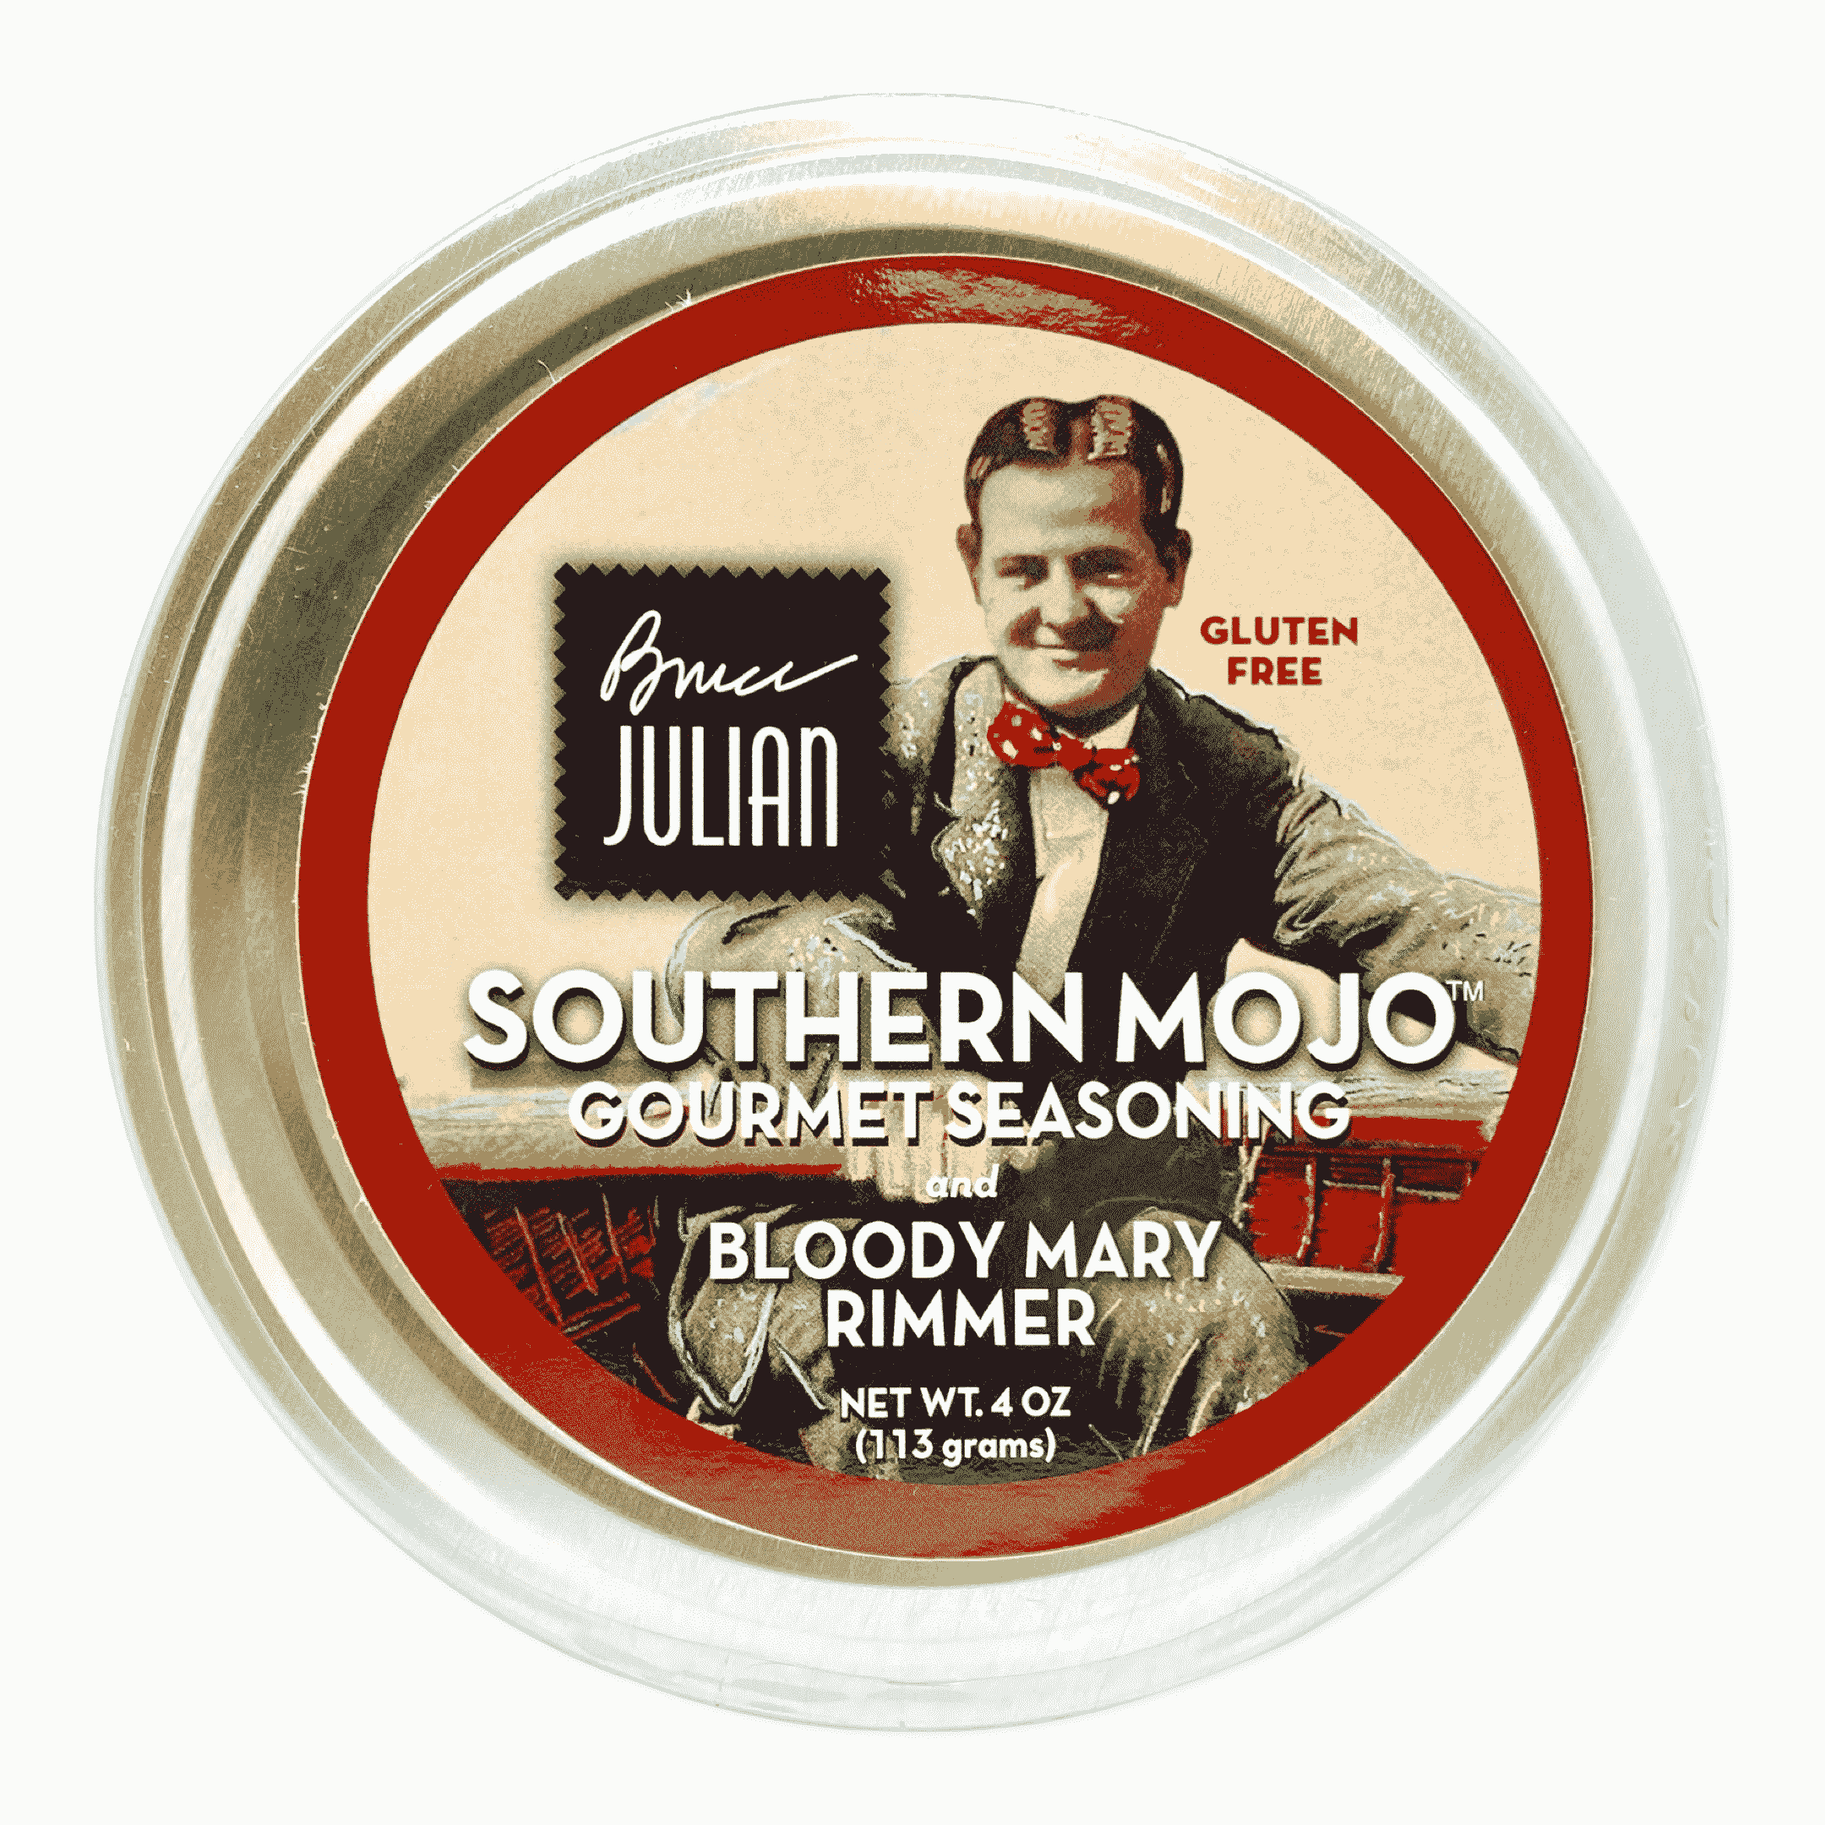 Bruce Julian Classic Rim - Gourmet Seasoning Blend, 4 oz